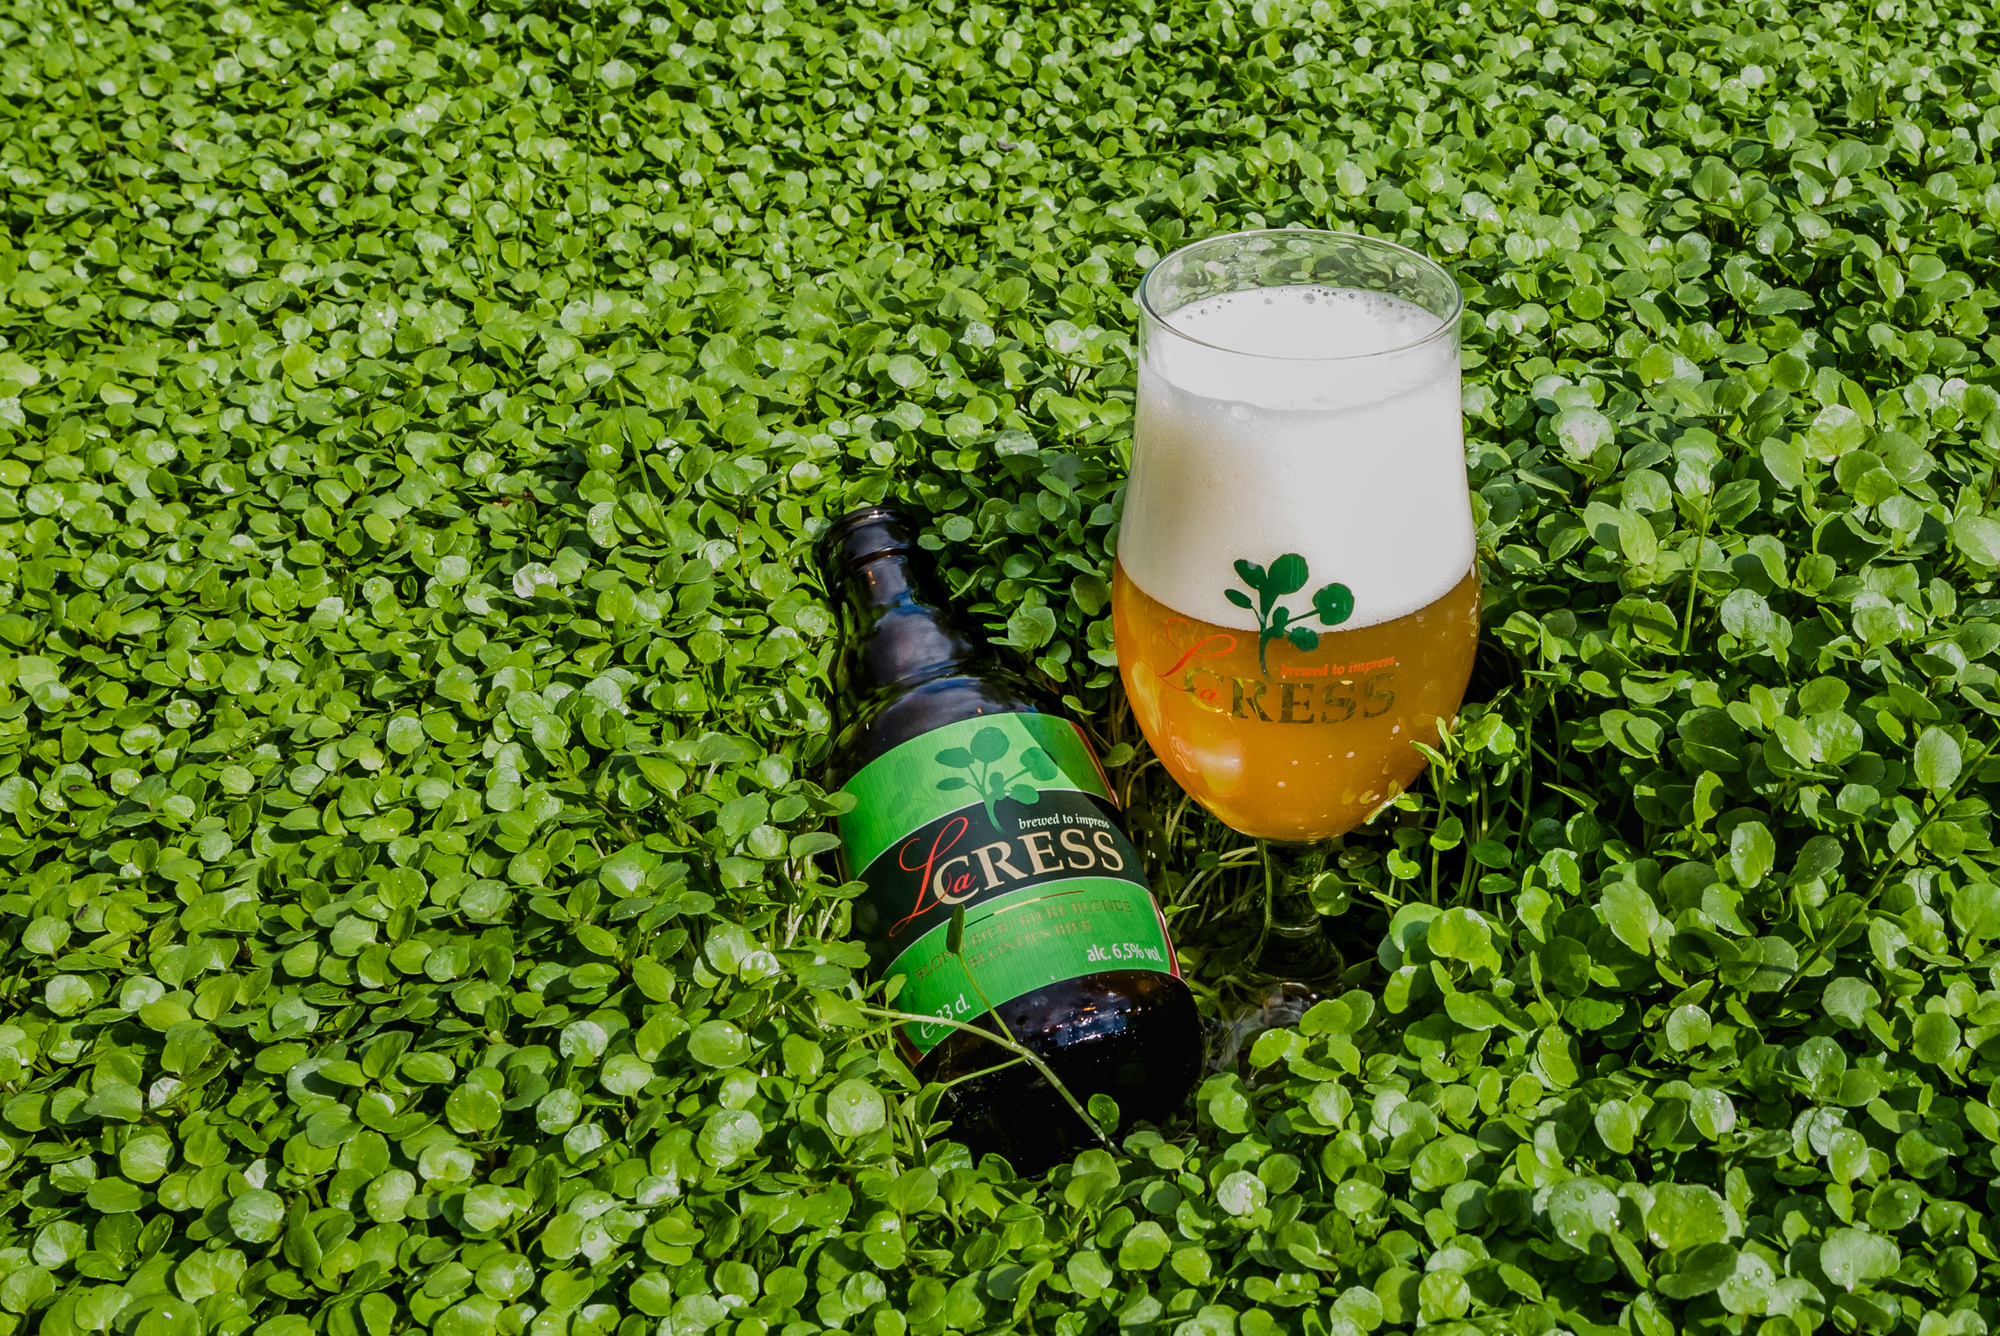 Het verhaal van waterkers- en bierproducent Sint-Lucie en La Cress